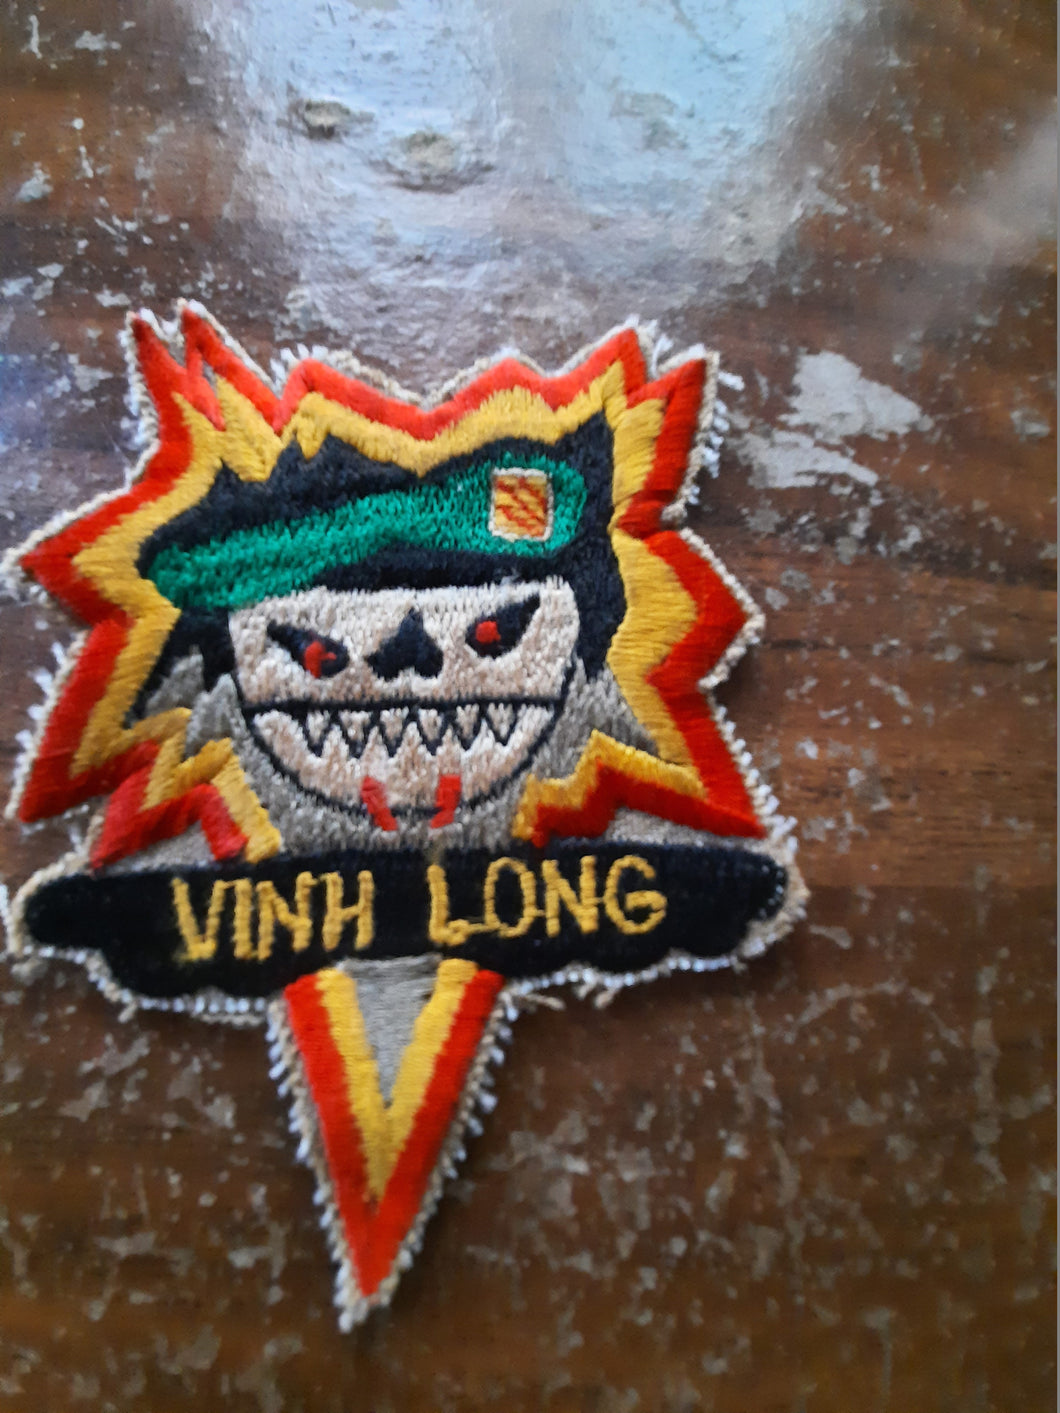 Vietnam war 5th special forces Vinh Long shoulder patch